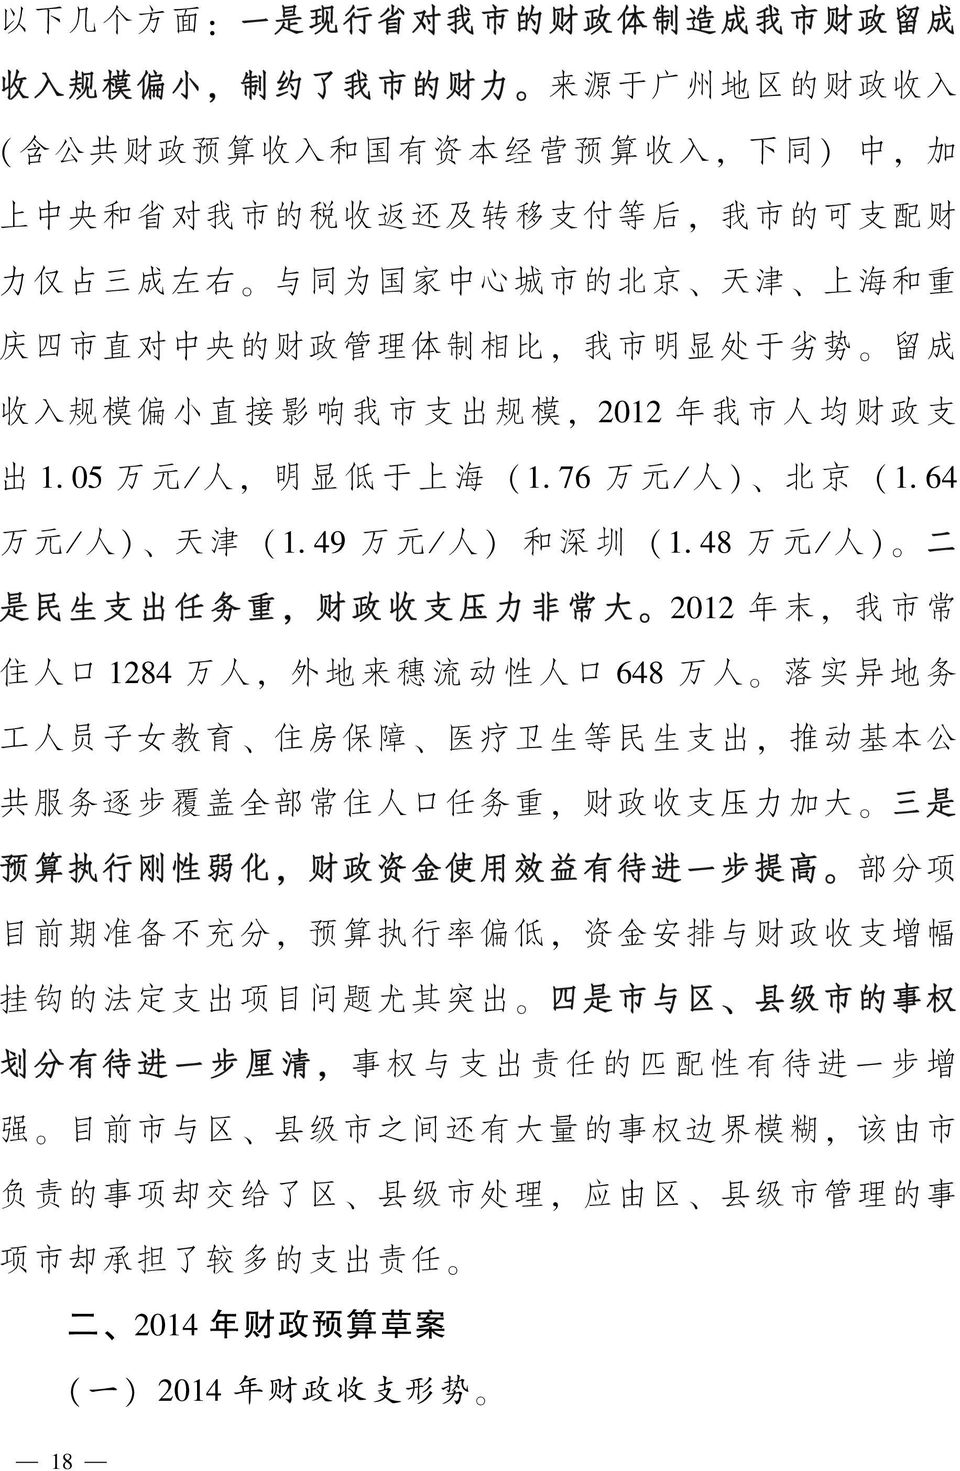 于 上 海 (1 郾 76 万 元 / 人 ) 北 京 (1 郾 64 万 元 / 人 ) 天 津 (1 郾 49 万 元 / 人 ) 和 深 圳 (1 郾 48 万 元 / 人 ) 二 是 民 生 支 出 任 务 重, 财 政 收 支 压 力 非 常 大 2012 年 末, 我 市 常 住 人 口 1284 万 人, 外 地 来 穗 流 动 性 人 口 648 万 人 落 实 异 地 务 工